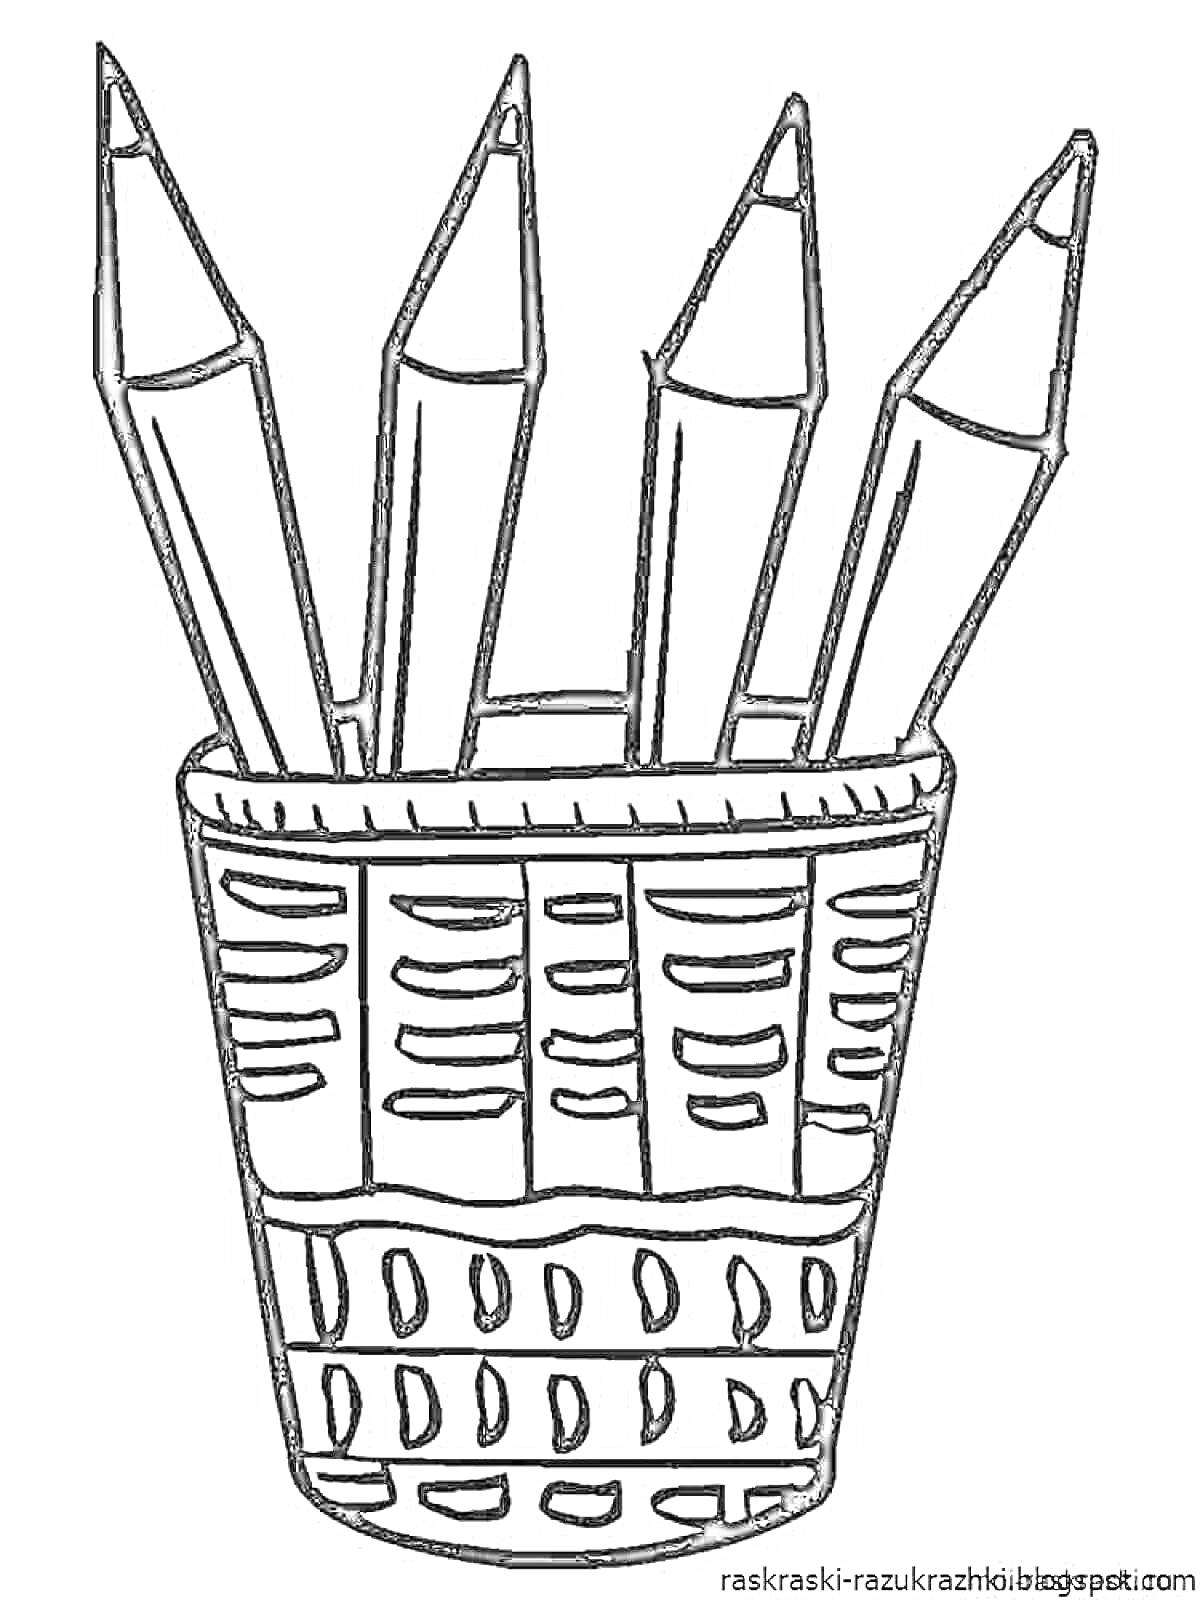 Раскраска Карандаши в стакане, четыре карандаша в стакане-органайзере